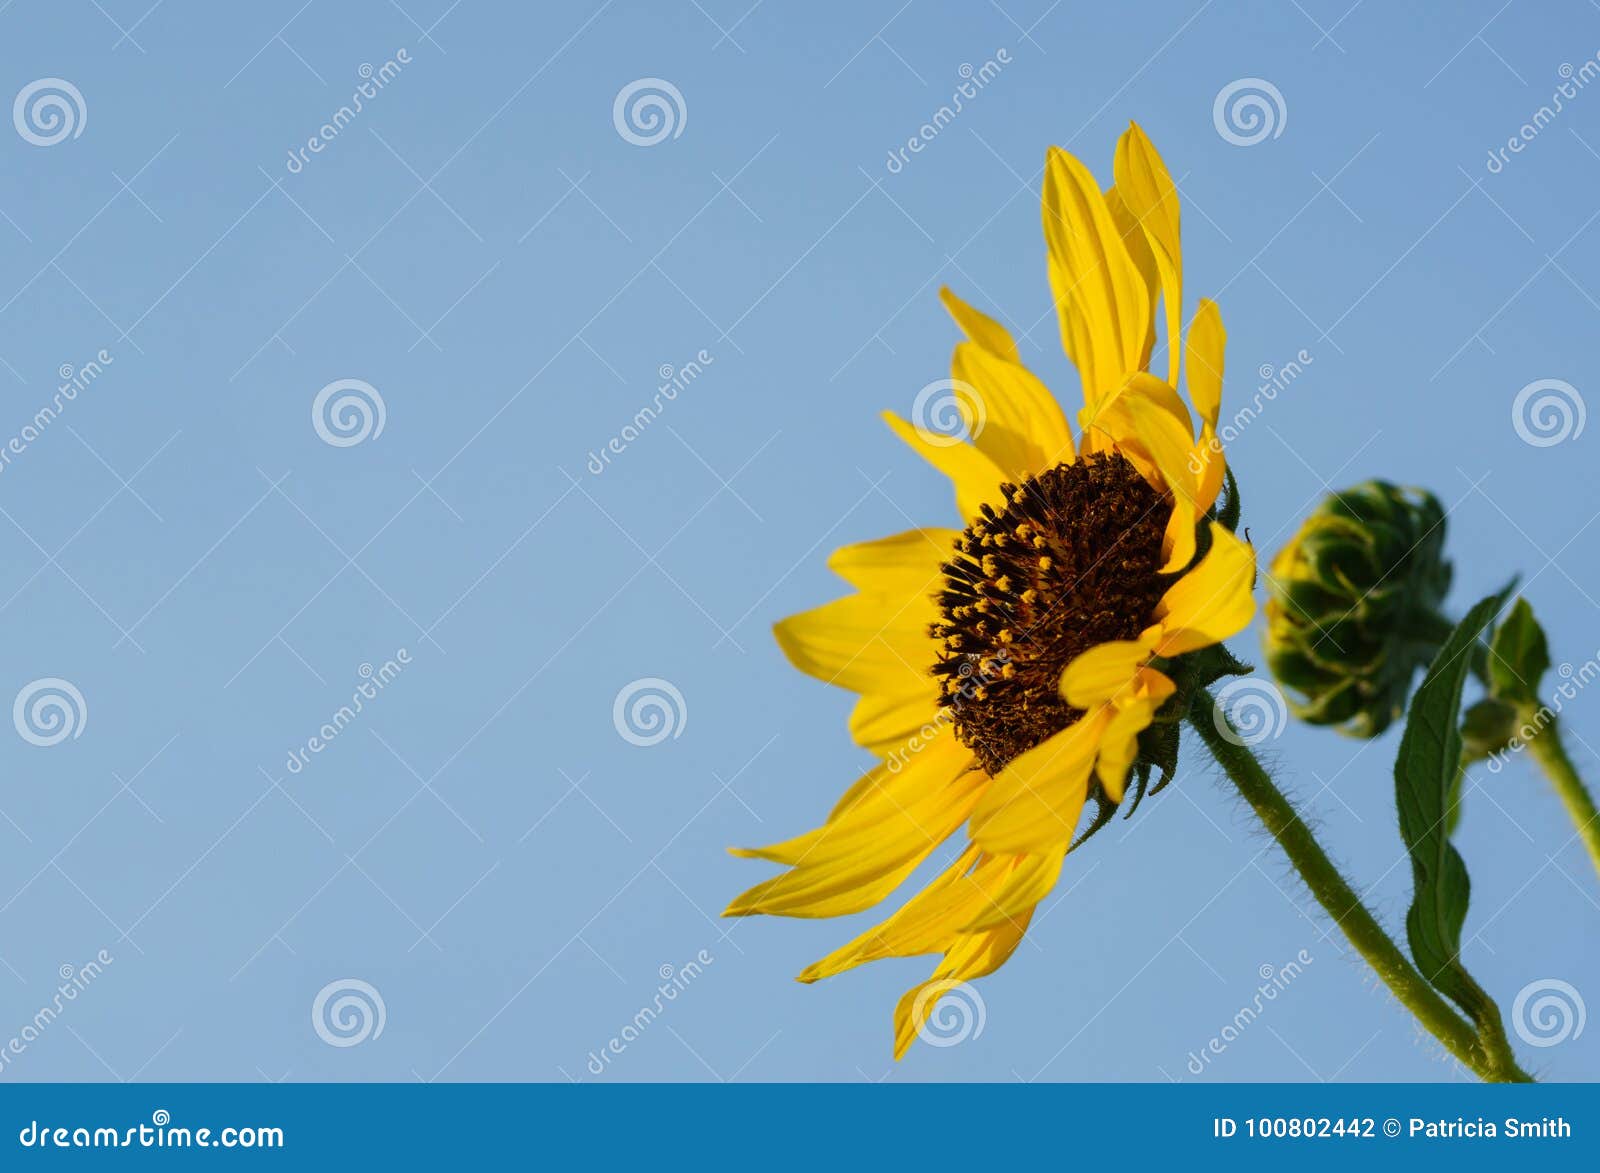 sunflower facing inward